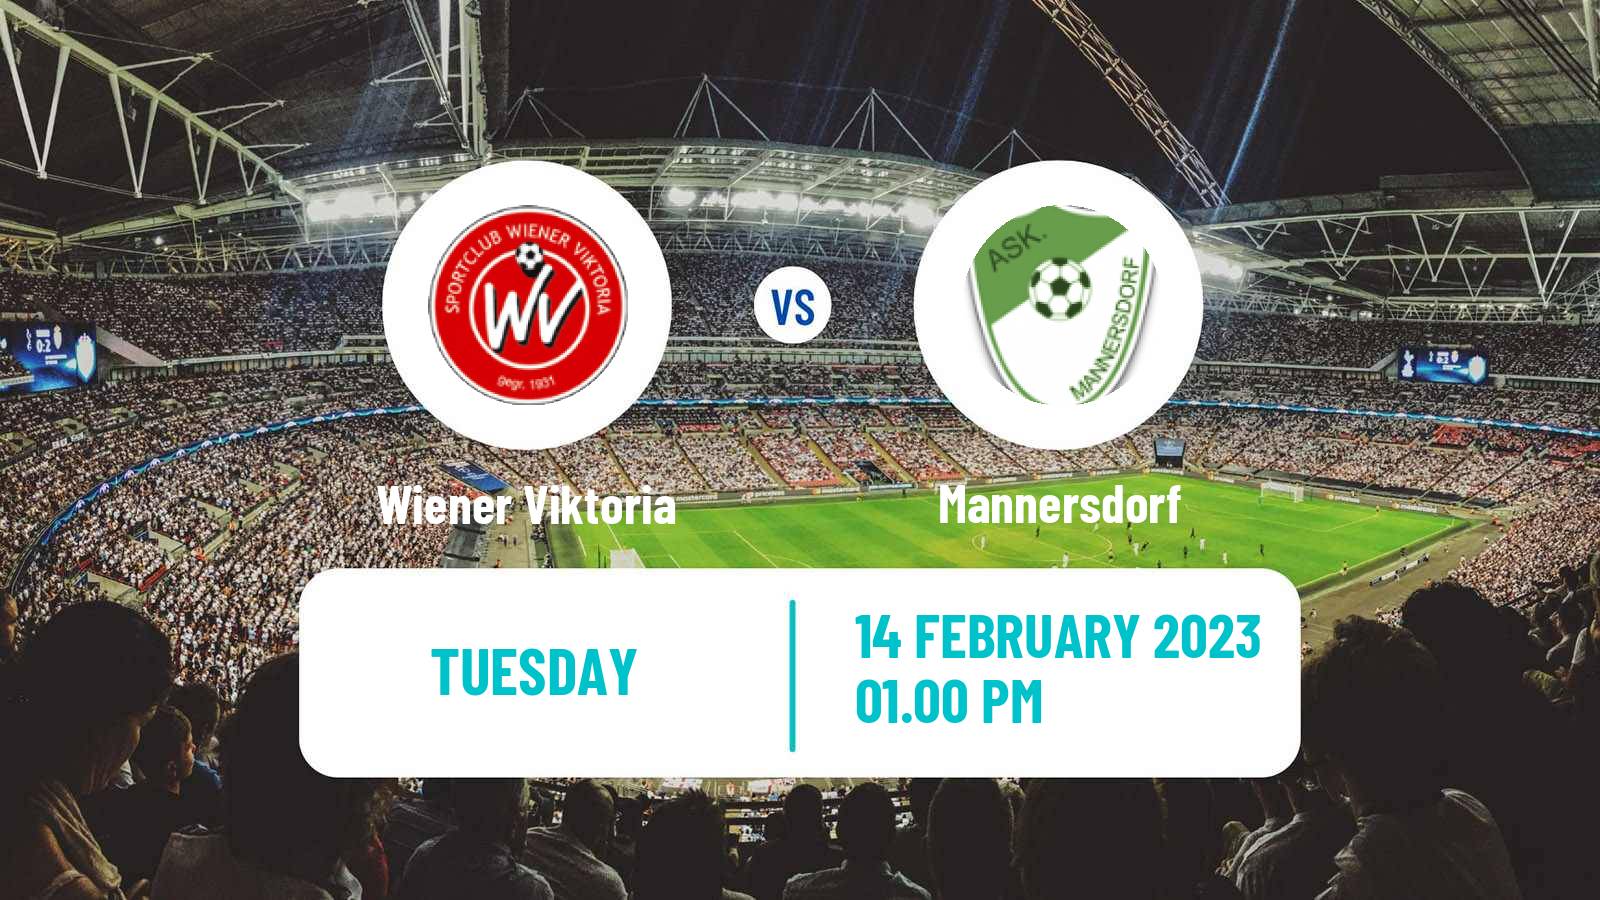 Soccer Club Friendly Wiener Viktoria - Mannersdorf